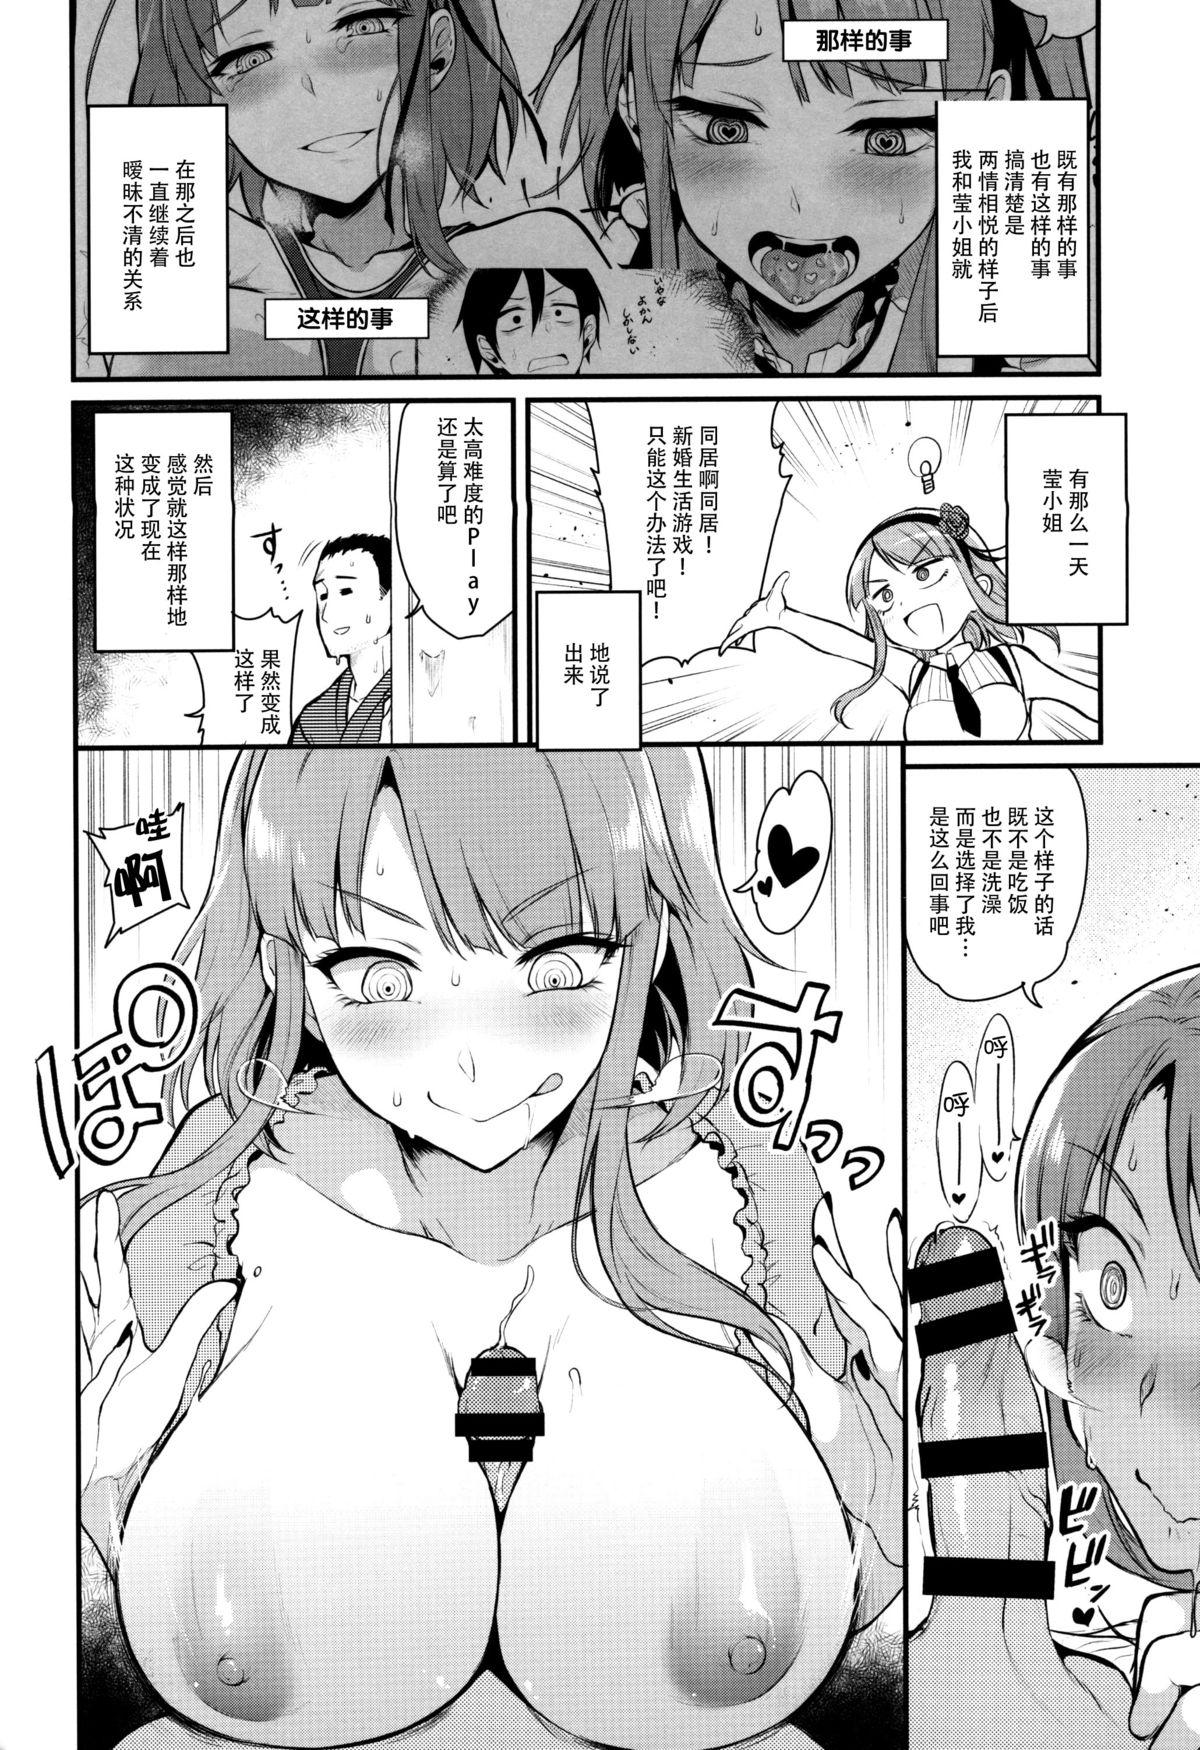 Ex Gf Otona no Dagashi 3 - Dagashi kashi Small Tits - Page 9